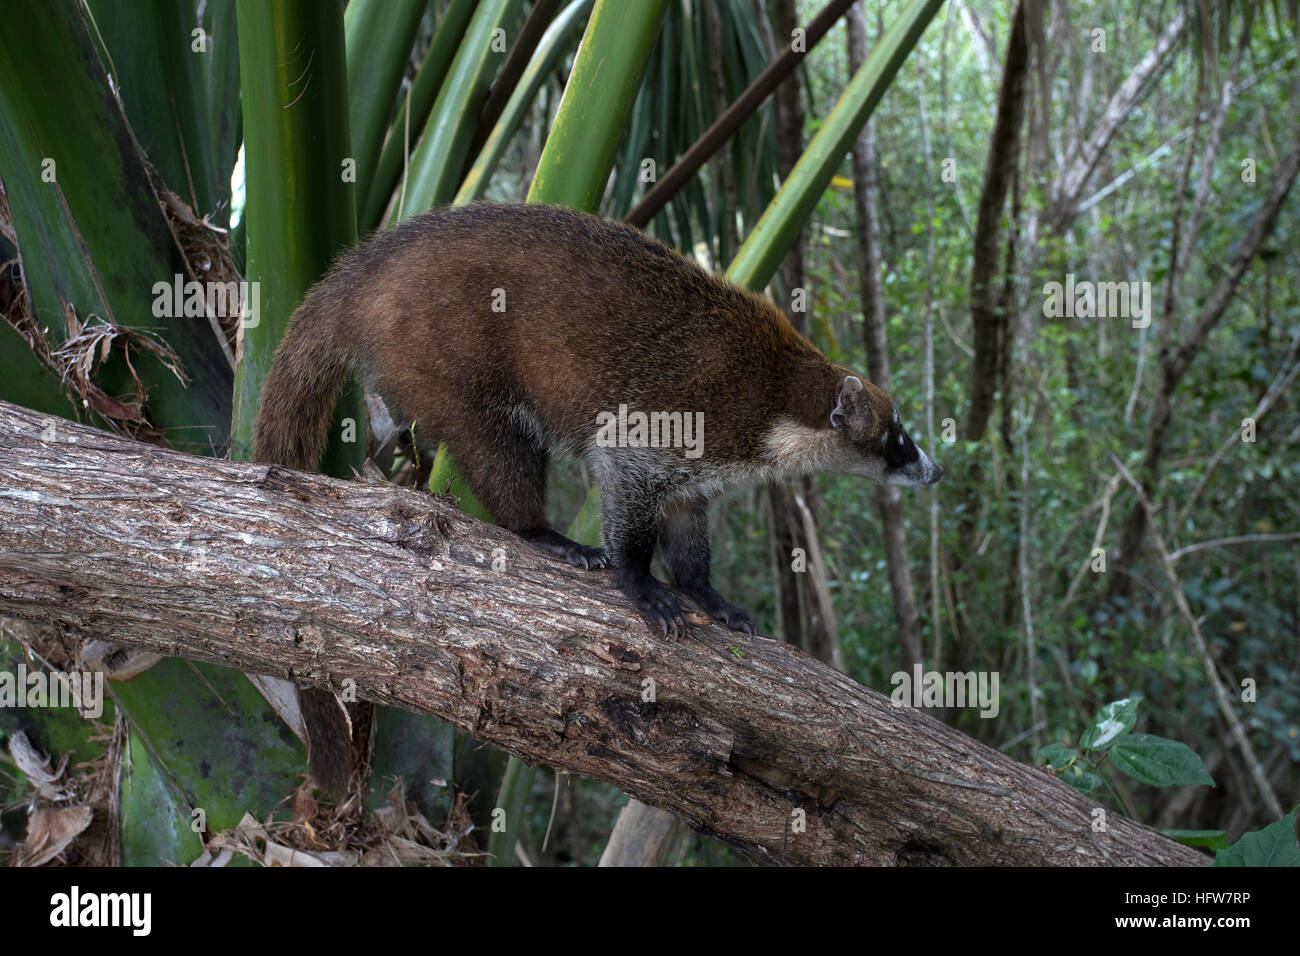 Mexique Coati Mundi wildlife jungle arbre. Le Coati ou Coatimundi est faune animal, membre de la famille raton laveur. Vit dans les jungles du Mexique. Banque D'Images